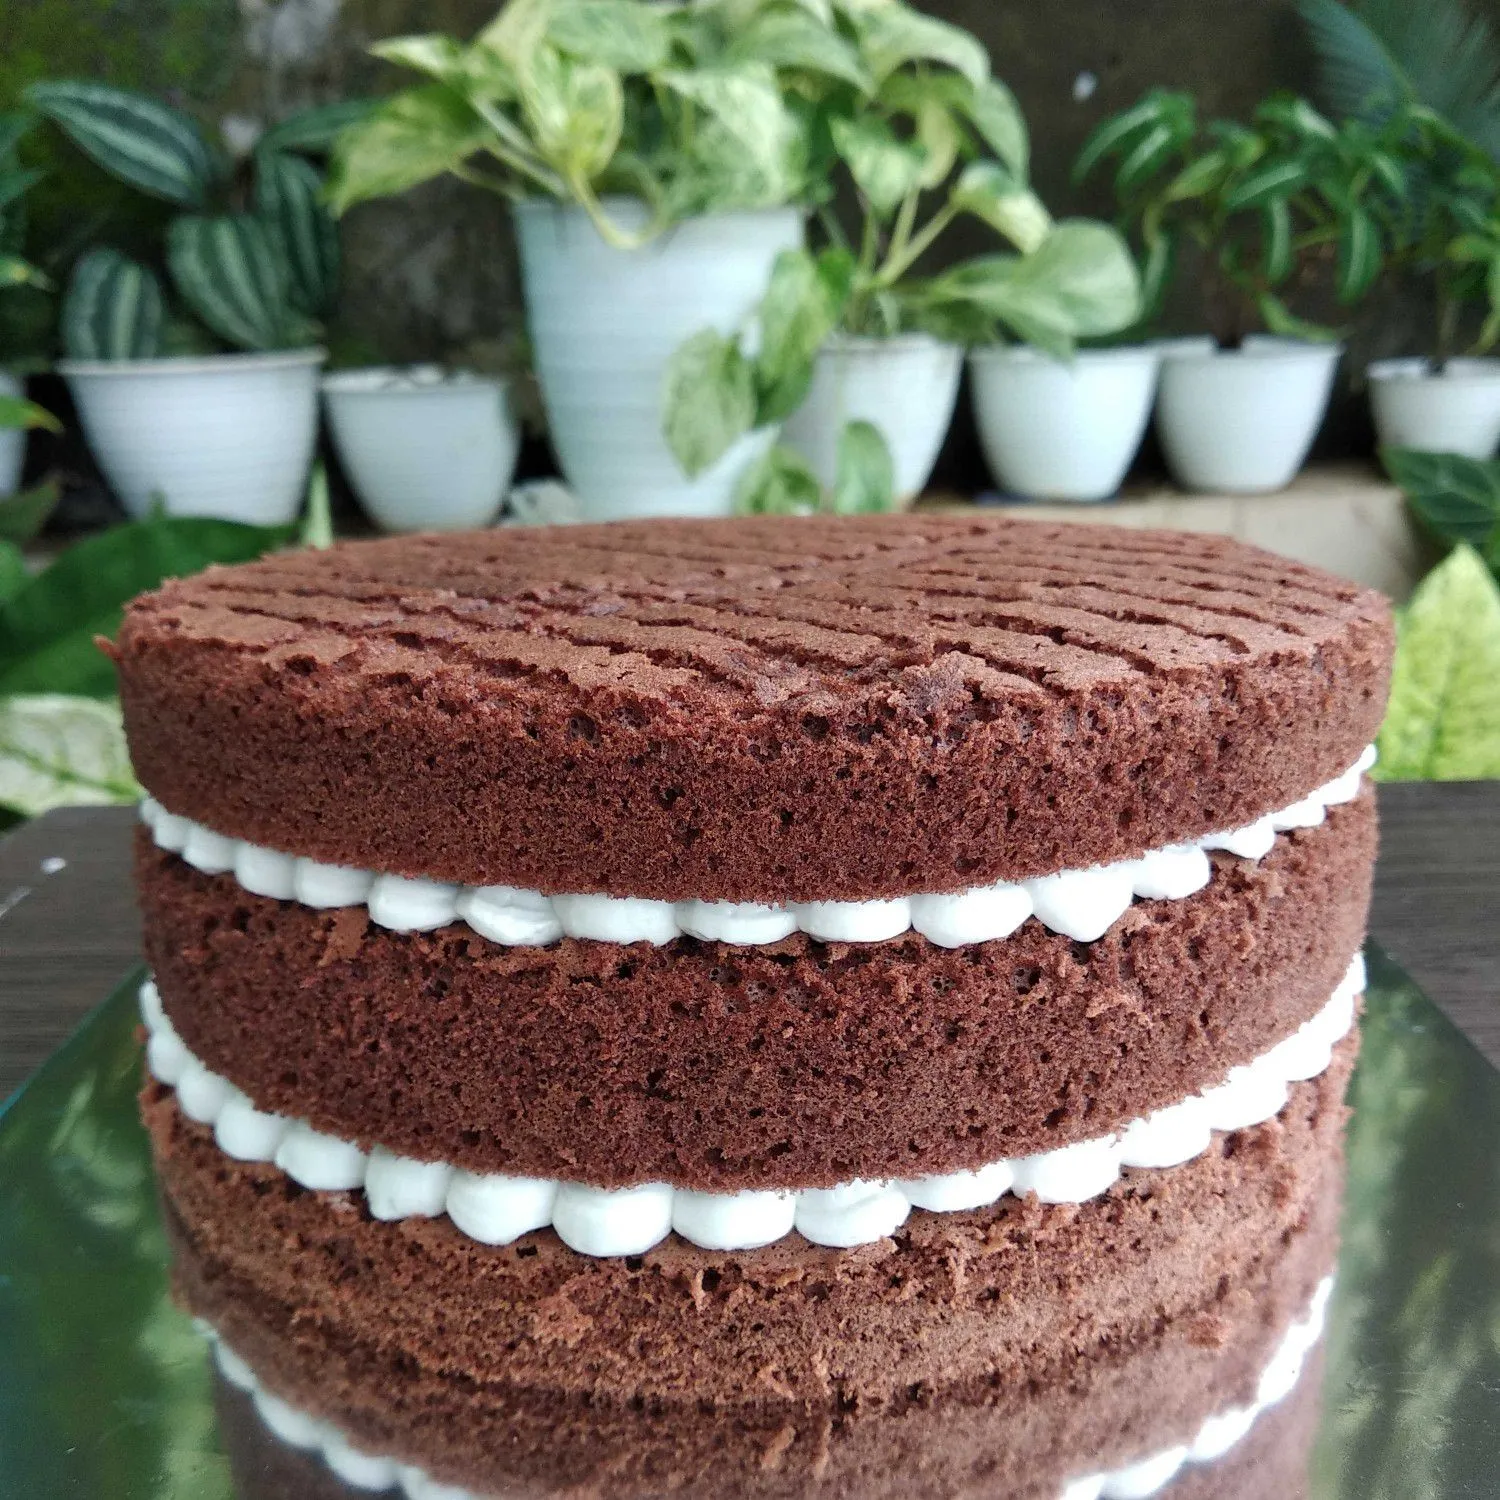 Sponge Cake Coklat #JagoMasakMinggu2Periode2